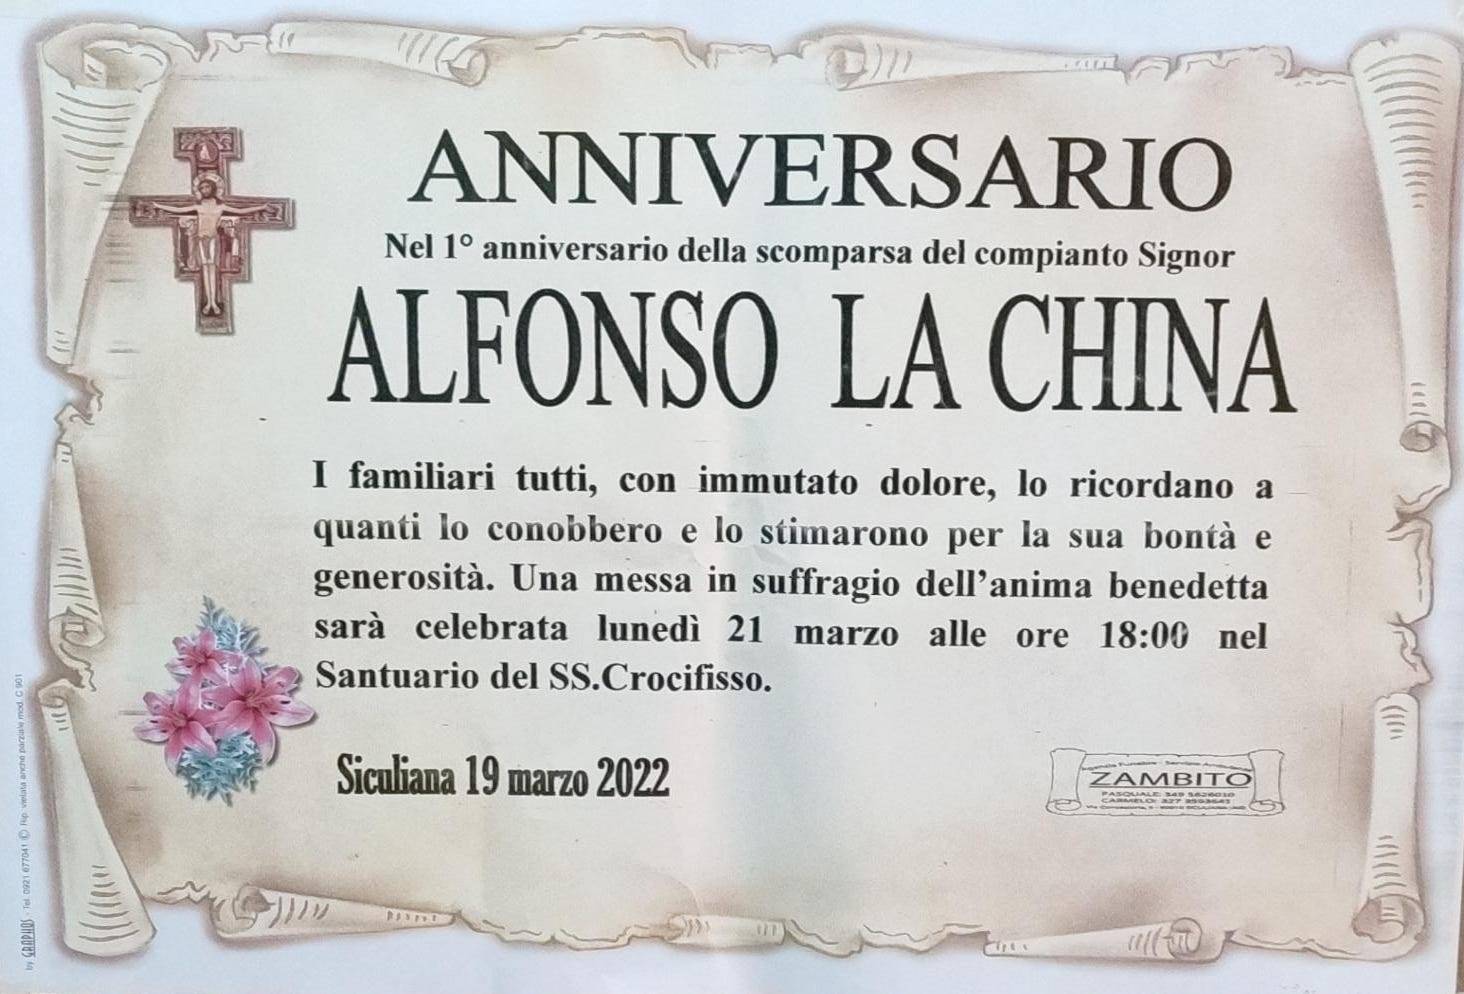 Alfonso La China